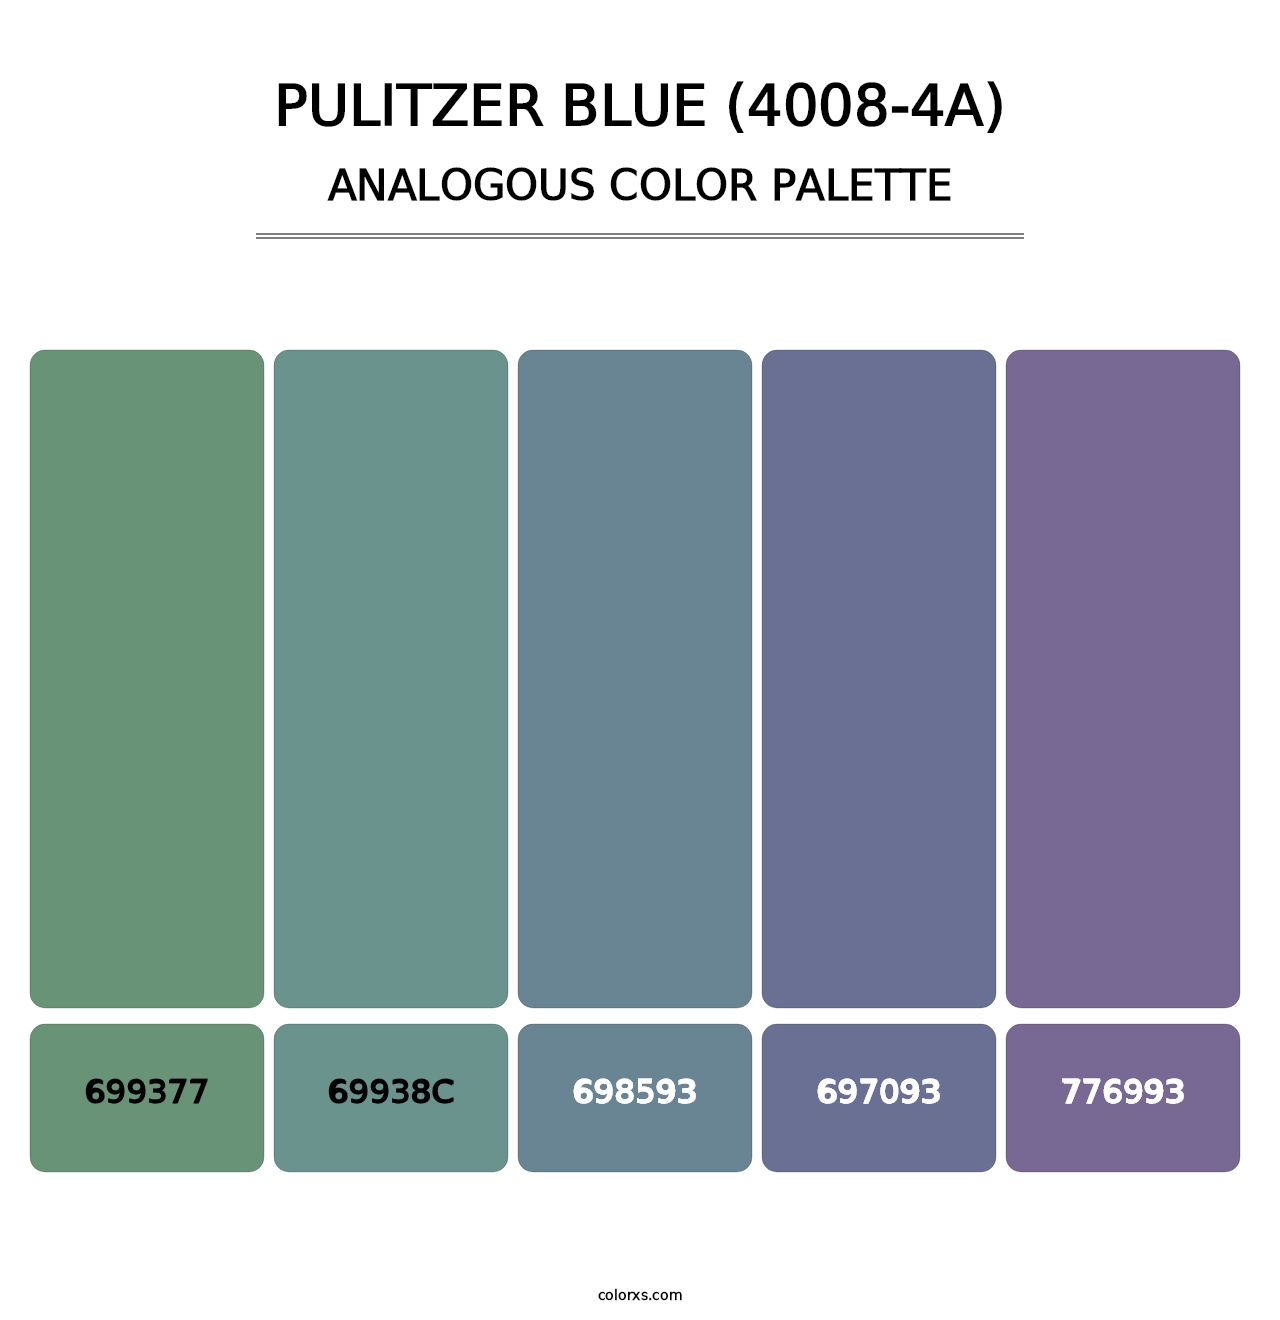 Pulitzer Blue (4008-4A) - Analogous Color Palette